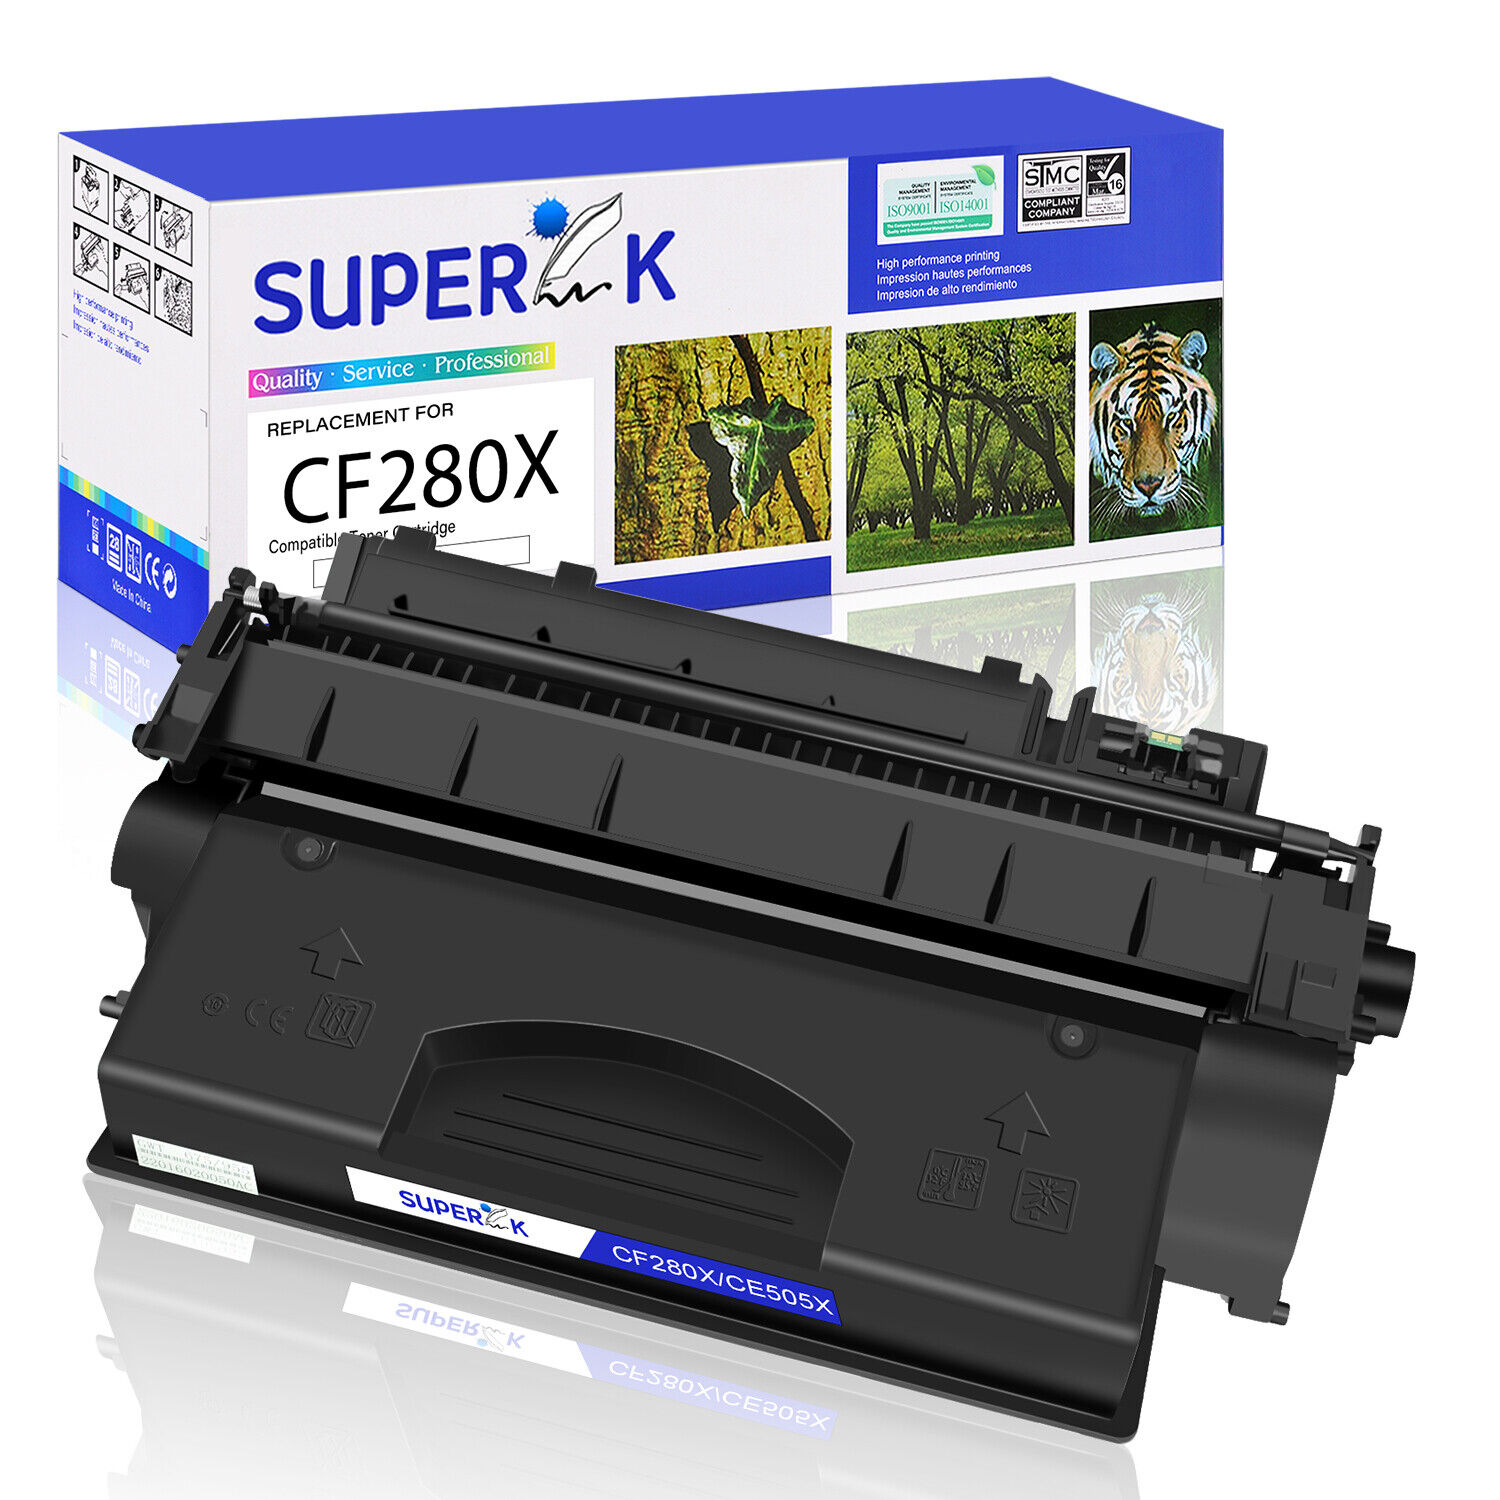 CF280X Toner Compatible With HP 80X LaserJet Pro 400 M425dn M425dw MFP M401n LOT